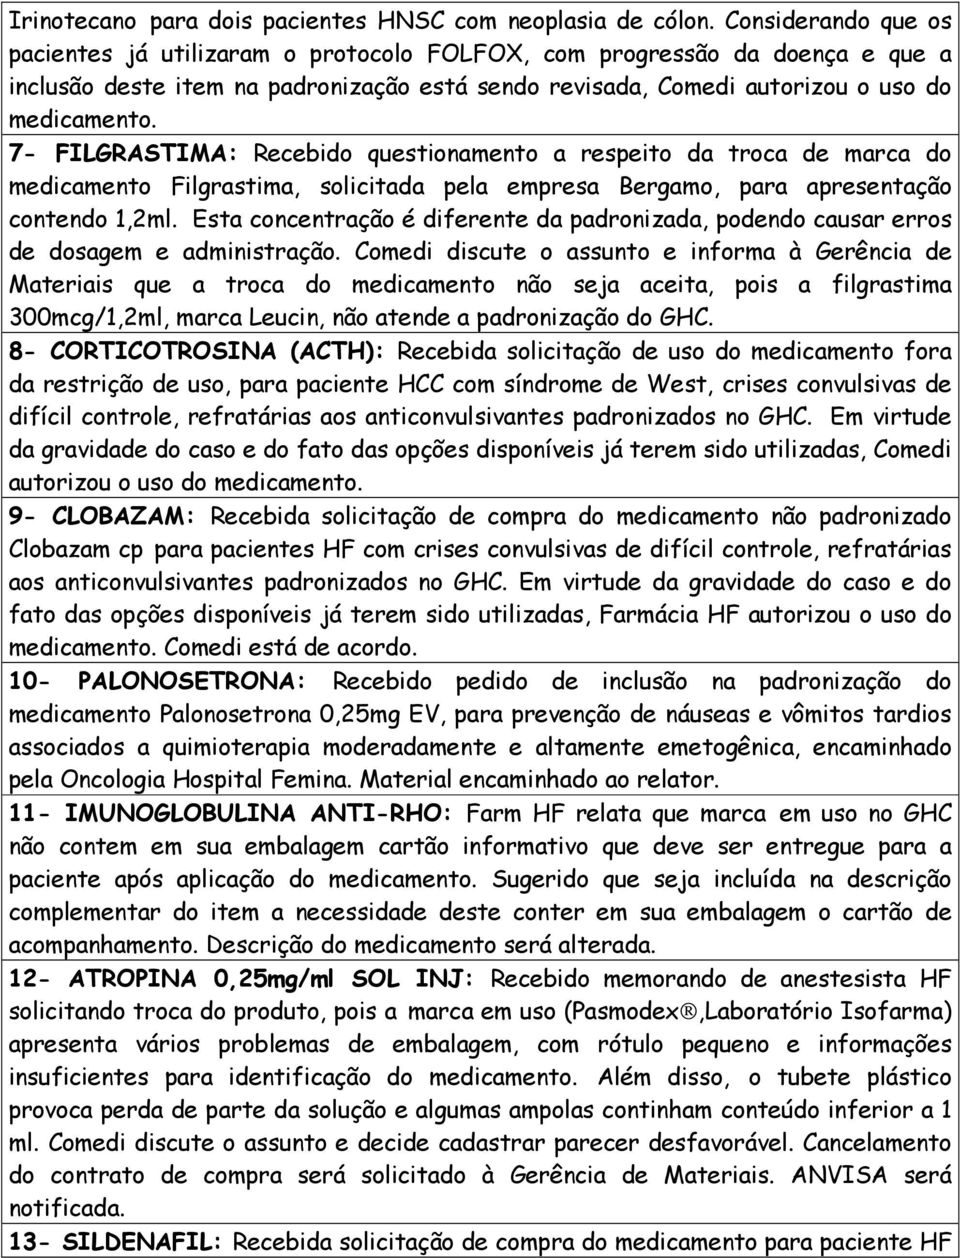 7- FILGRASTIMA: Recebido questionamento a respeito da troca de marca do medicamento Filgrastima, solicitada pela empresa Bergamo, para apresentação contendo 1,2ml.